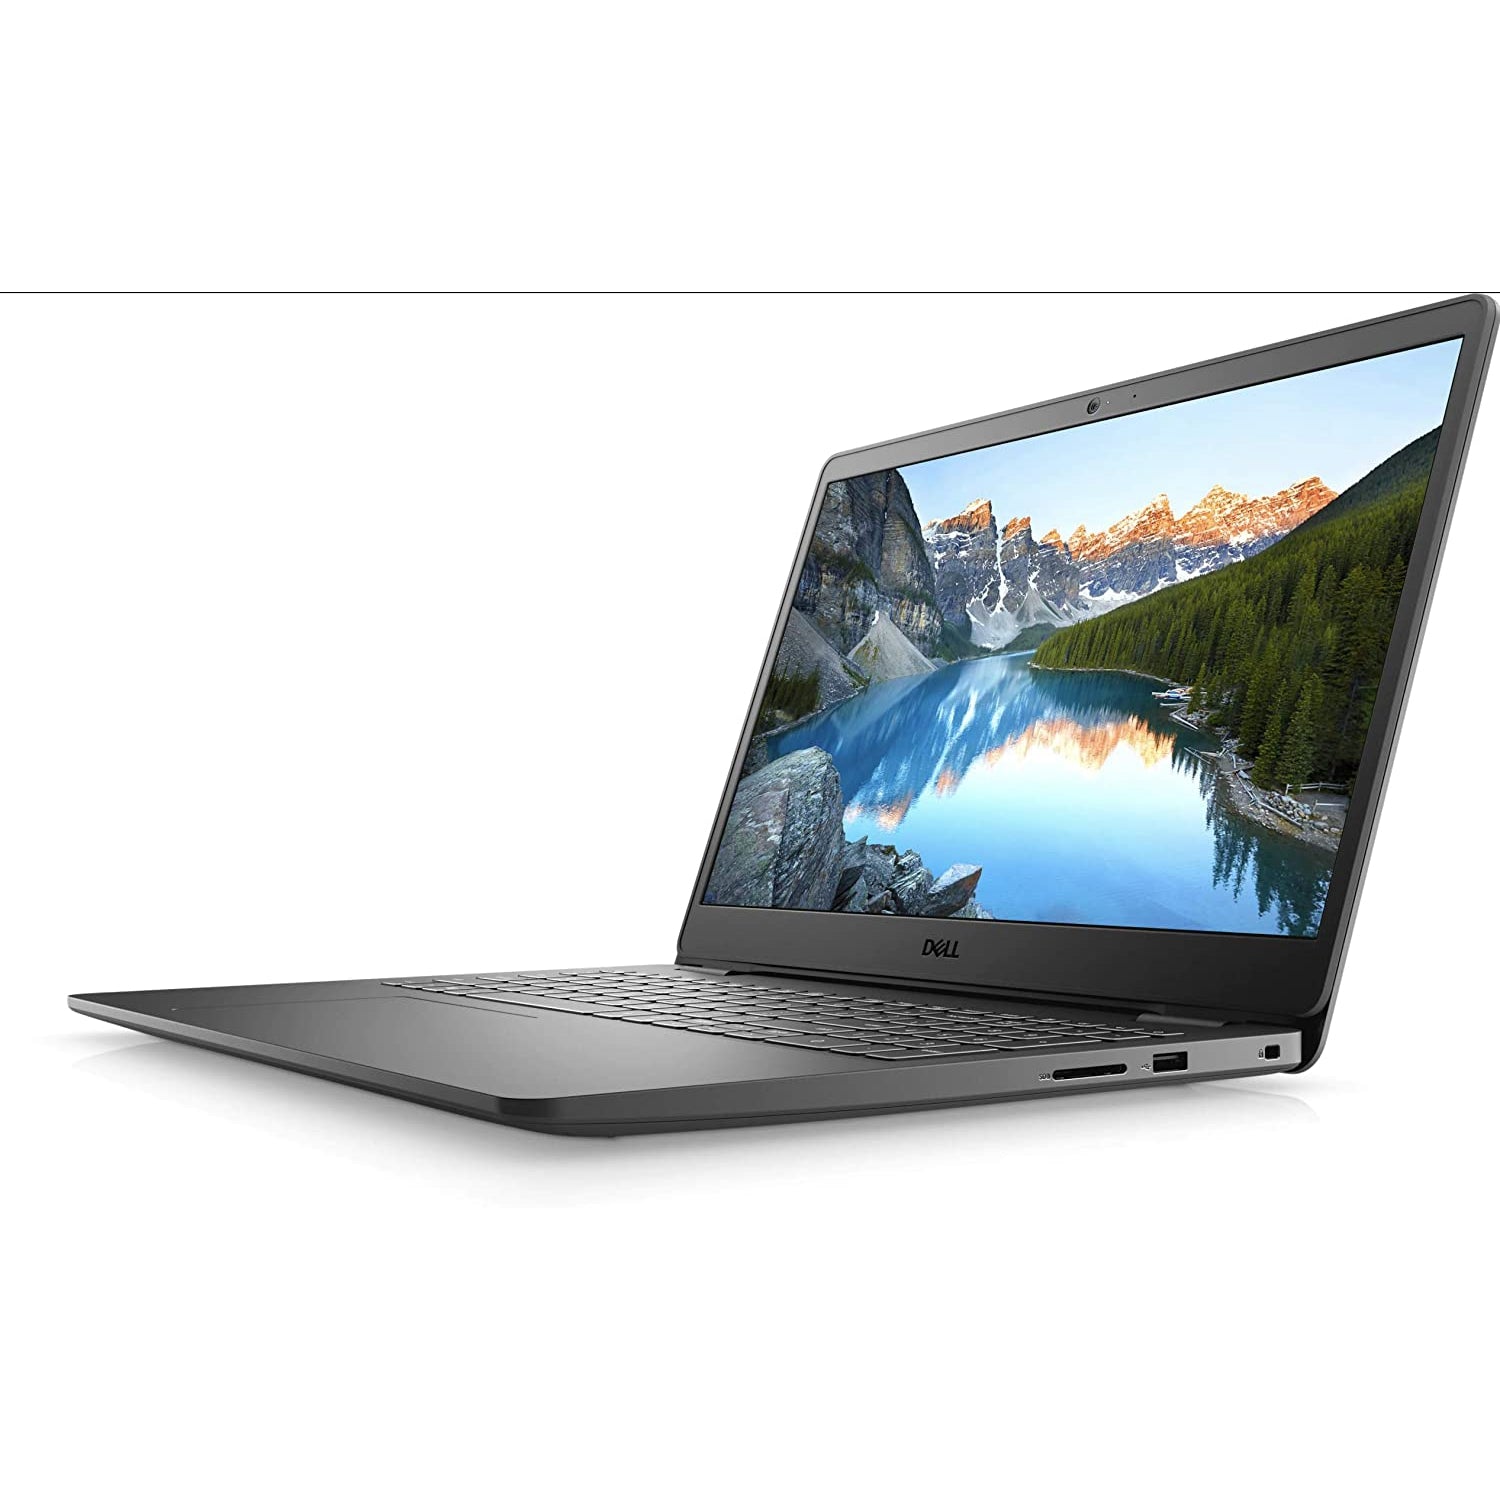 Dell Inspiron 15 5301 Laptop, Intel Core i5, 8GB, 256GB, 15.6" - Black